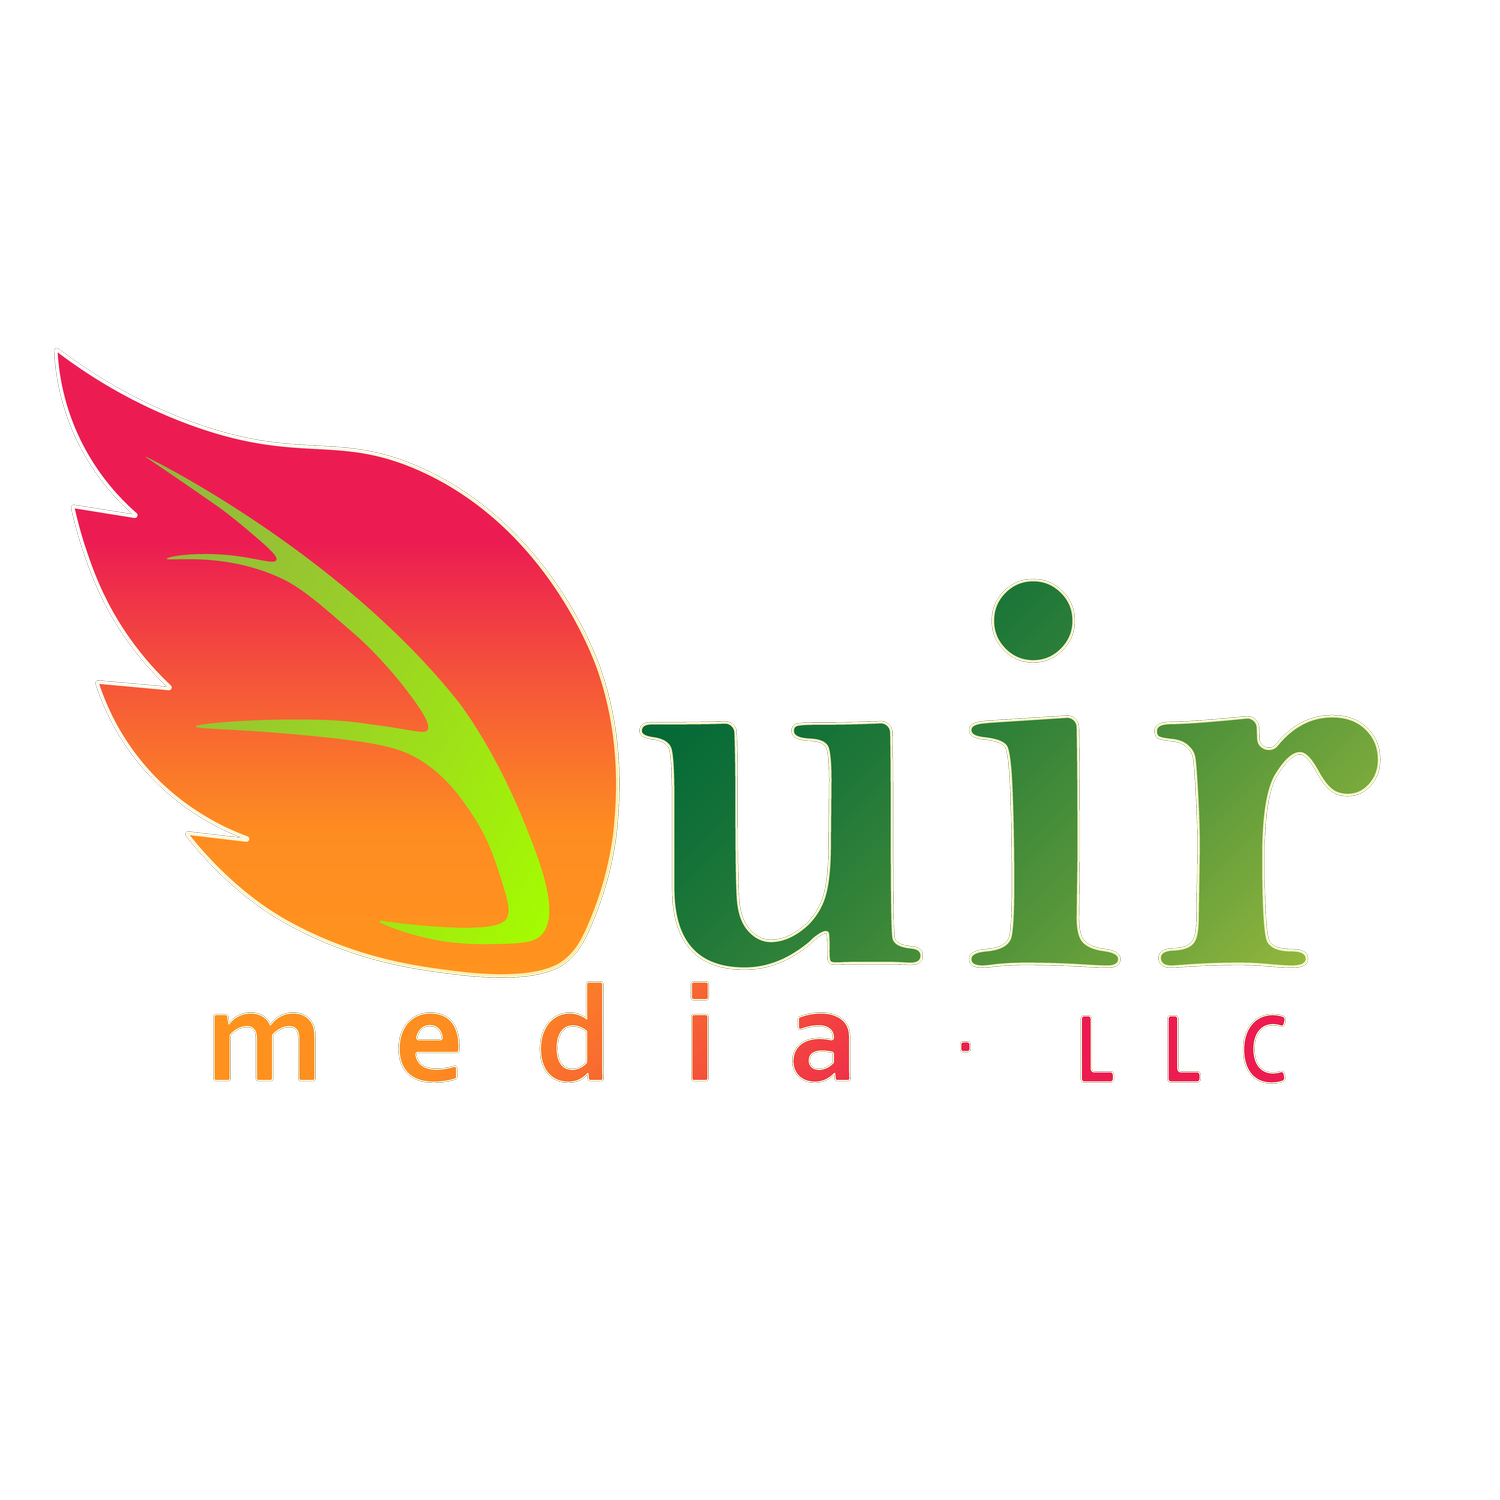 DUIR MEDIA | Sound, Image &amp; Brand Design.